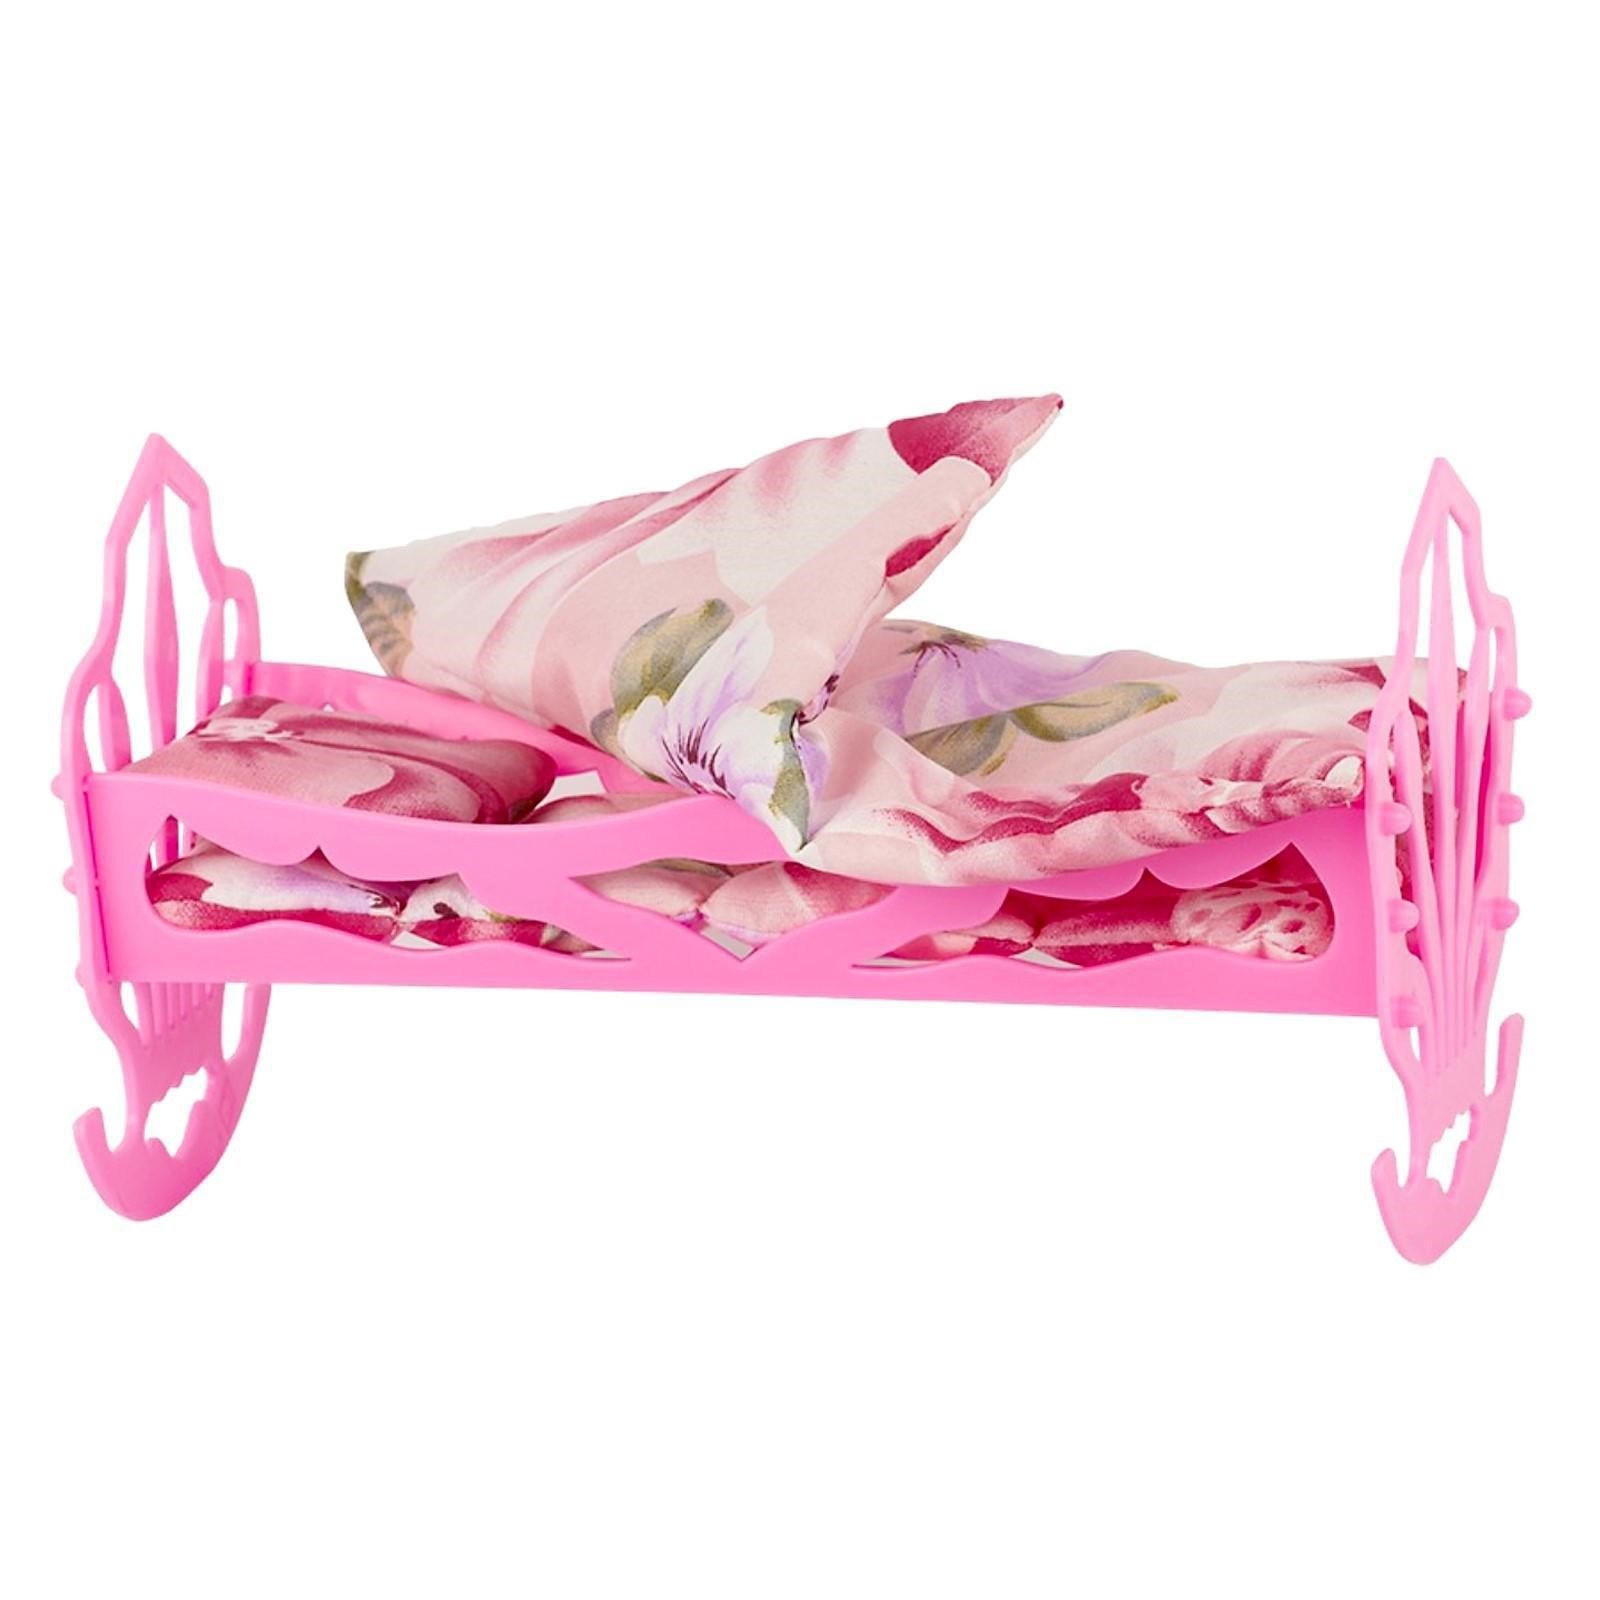 Кроватка Совтехстром кукольная, с комплектом белья: матрас, подушка, одеяло